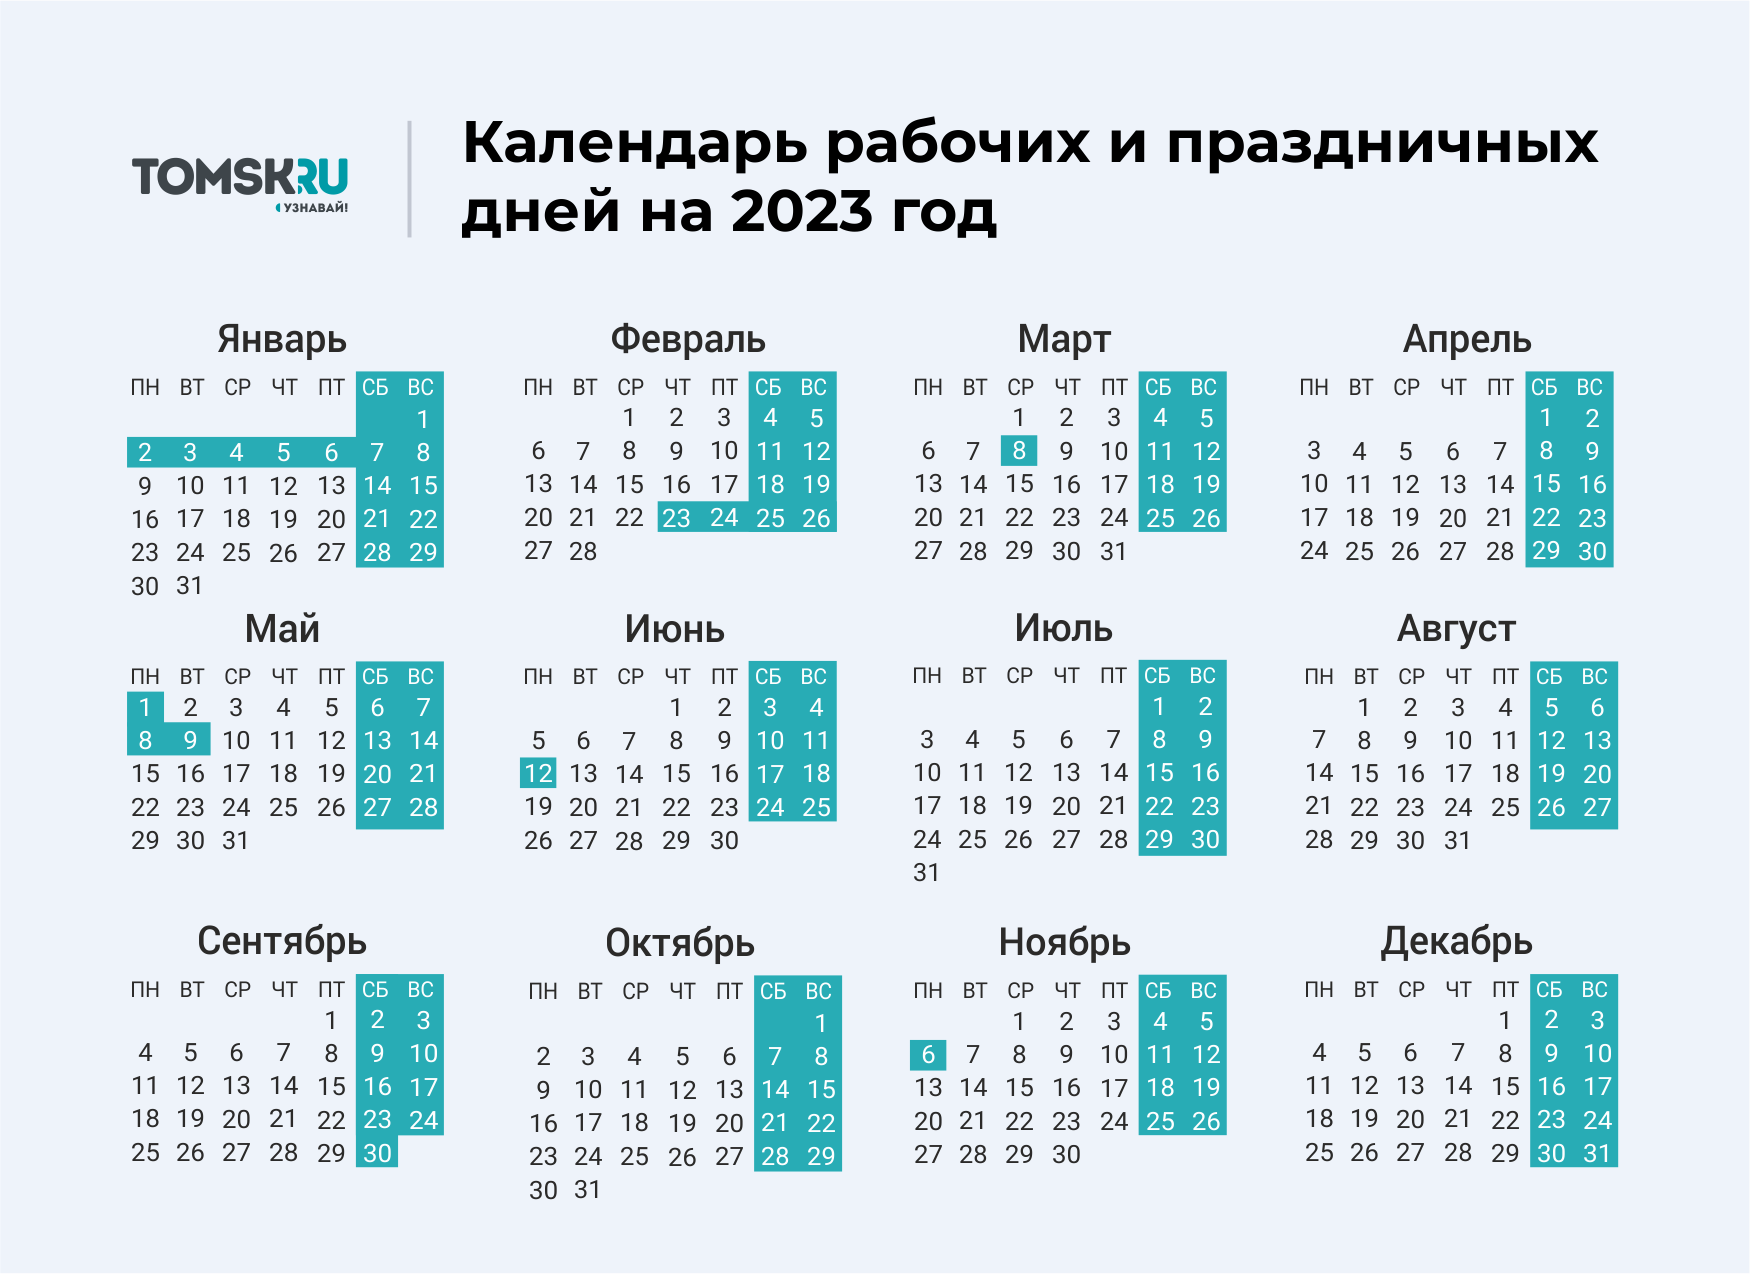 Выходные дни в мае месяце 2024 года. Выходные дни в 2023 году в России календарь. Календарь выходных и праздничных дней на 2023 год в России. Календарь праздничных выходеыхв 2023 году. Календарь на 2023 год с праздниками и выходными выходные снизу.